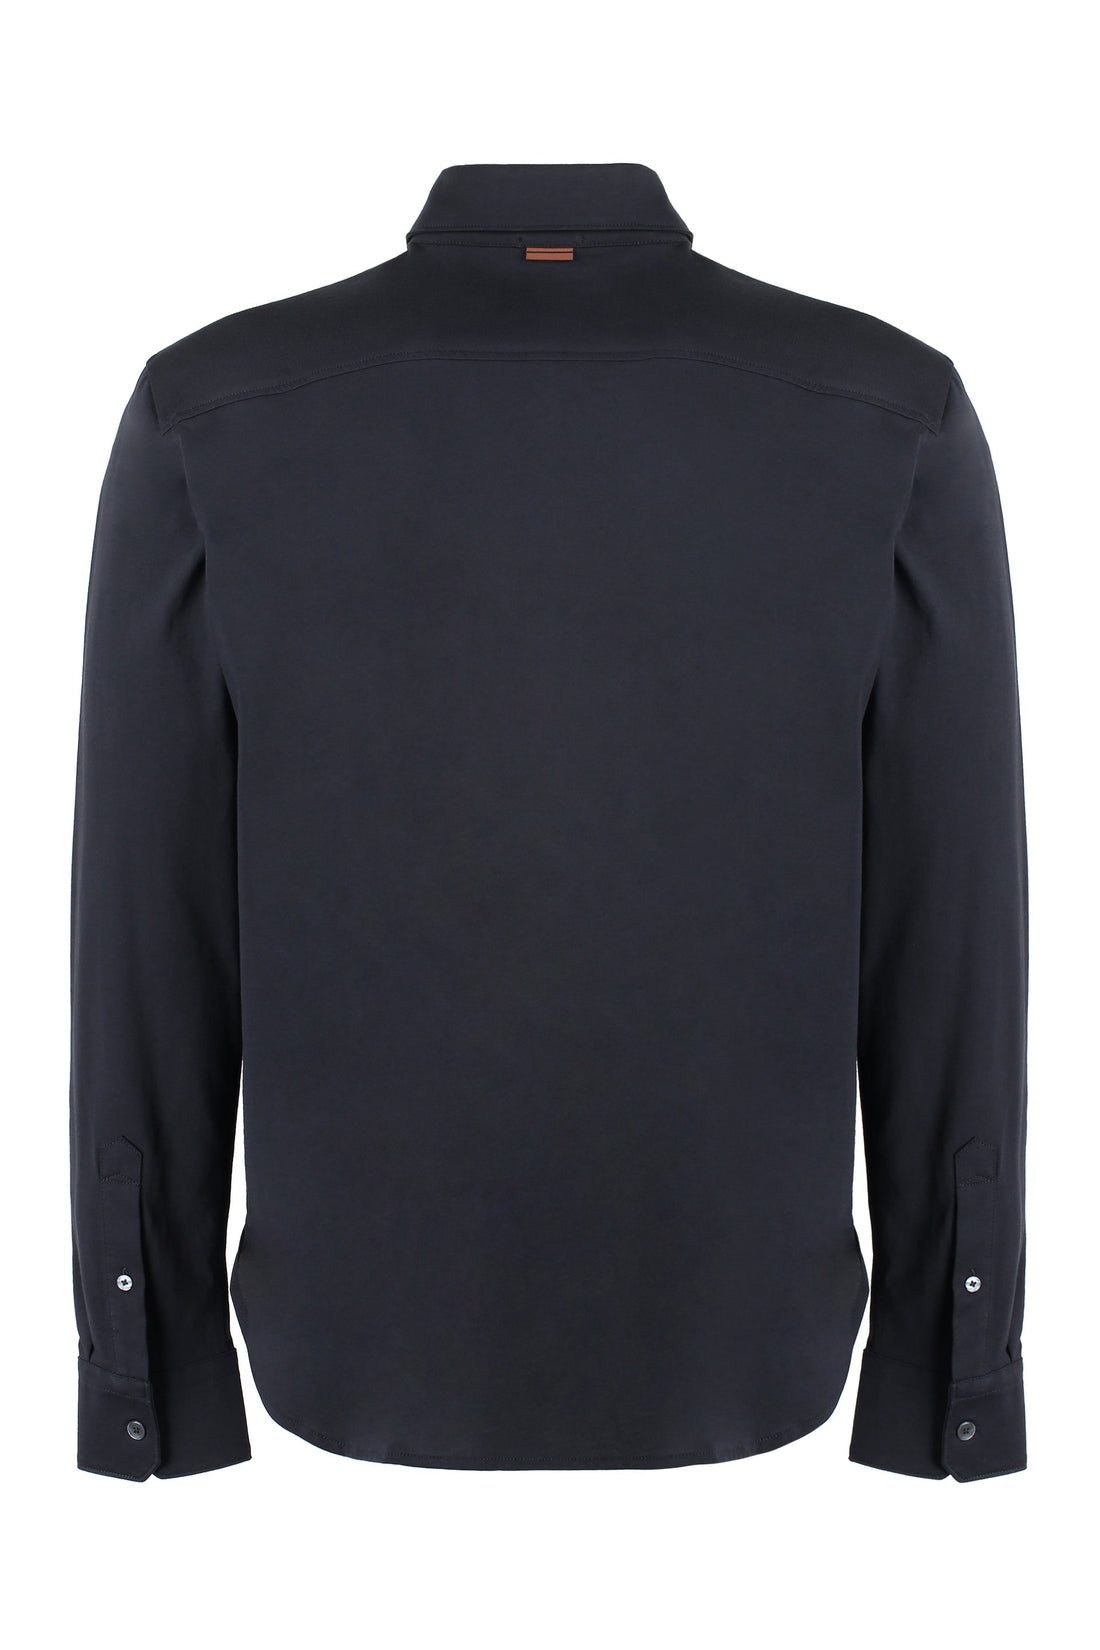 Zegna-OUTLET-SALE-Long sleeve cotton shirt-ARCHIVIST